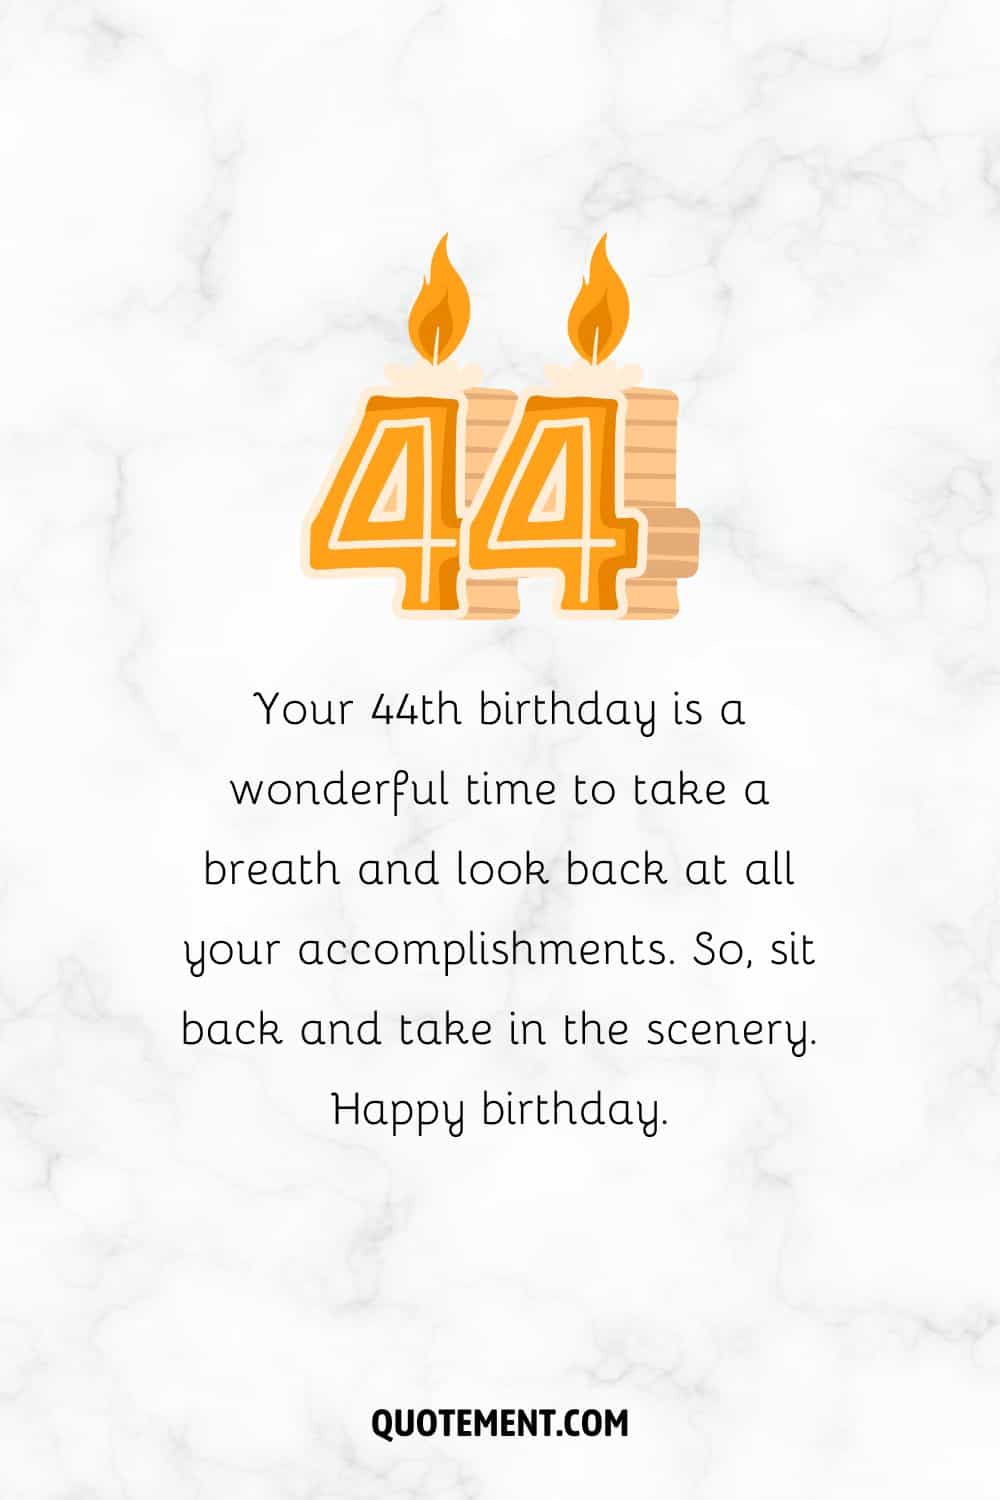 90 Loving Ways To Wish Somebody A Happy 44th Birthday